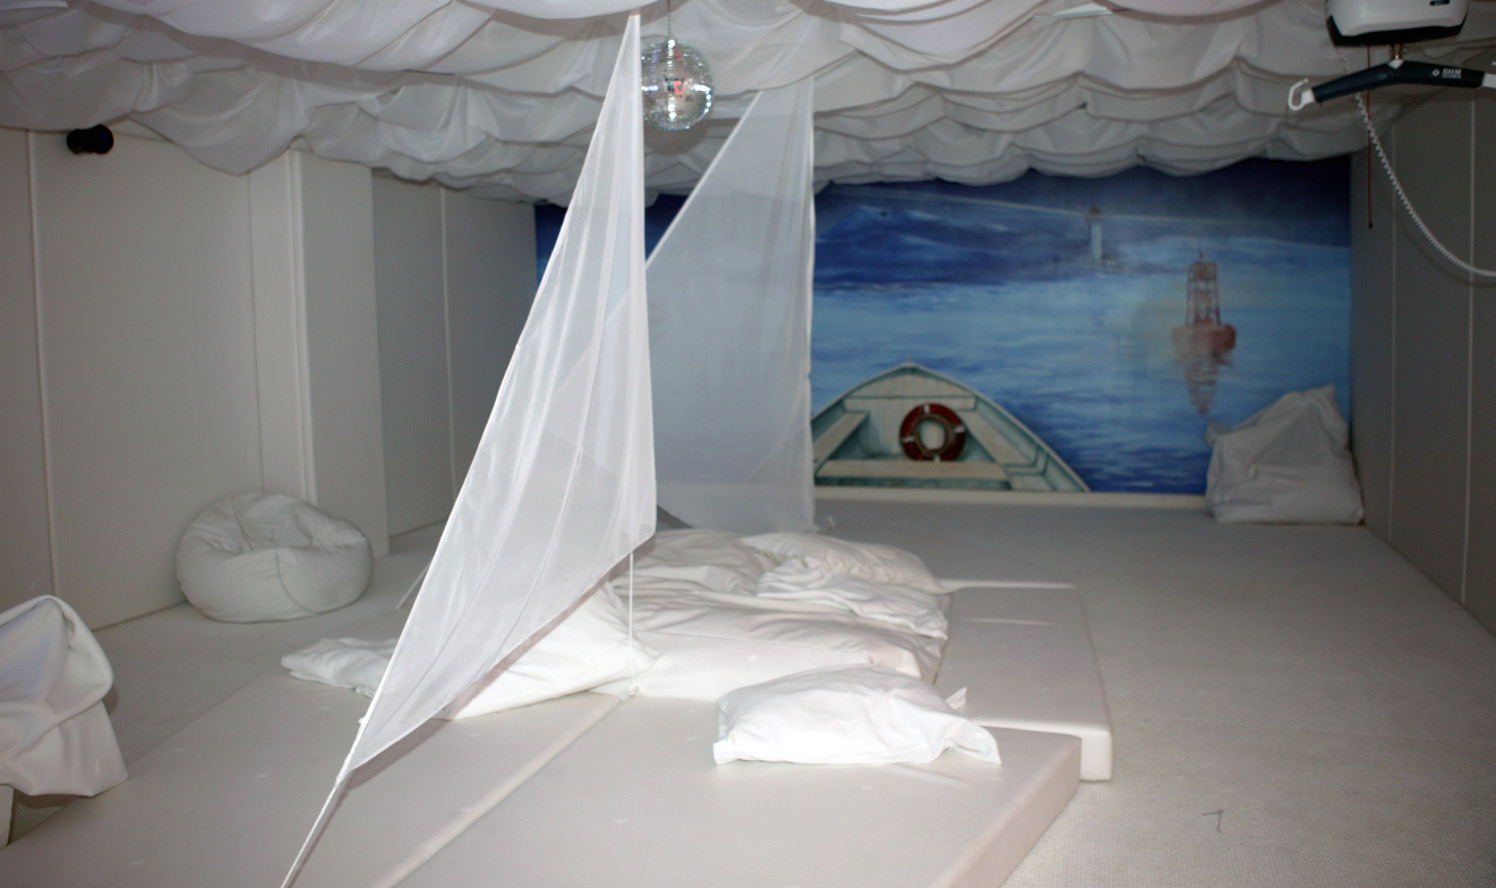 Salle Inukshuk (local 0911) Une salle de relaxation et de recueillement est disponible pour vous et vos proches.